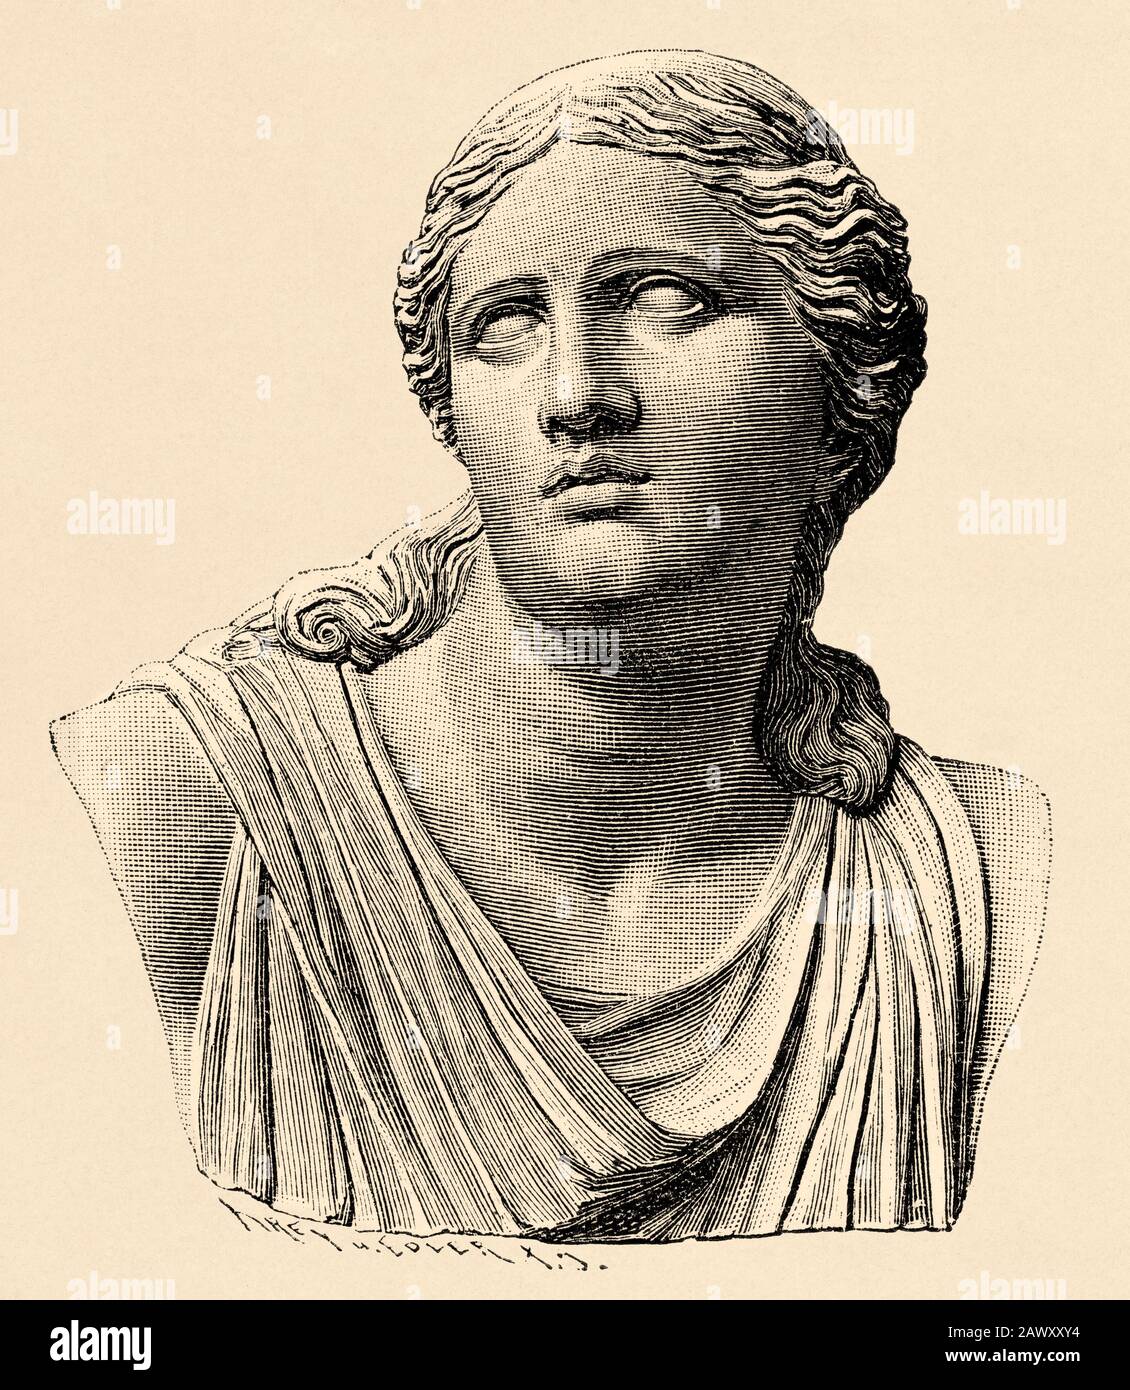 Níobe è un personaggio della mitologia greca, figlia di Tantalo e moglie di Anfión, re di Tebas. Grecia storia antica. Vecchia illustrazione dell'incisione fr Foto Stock